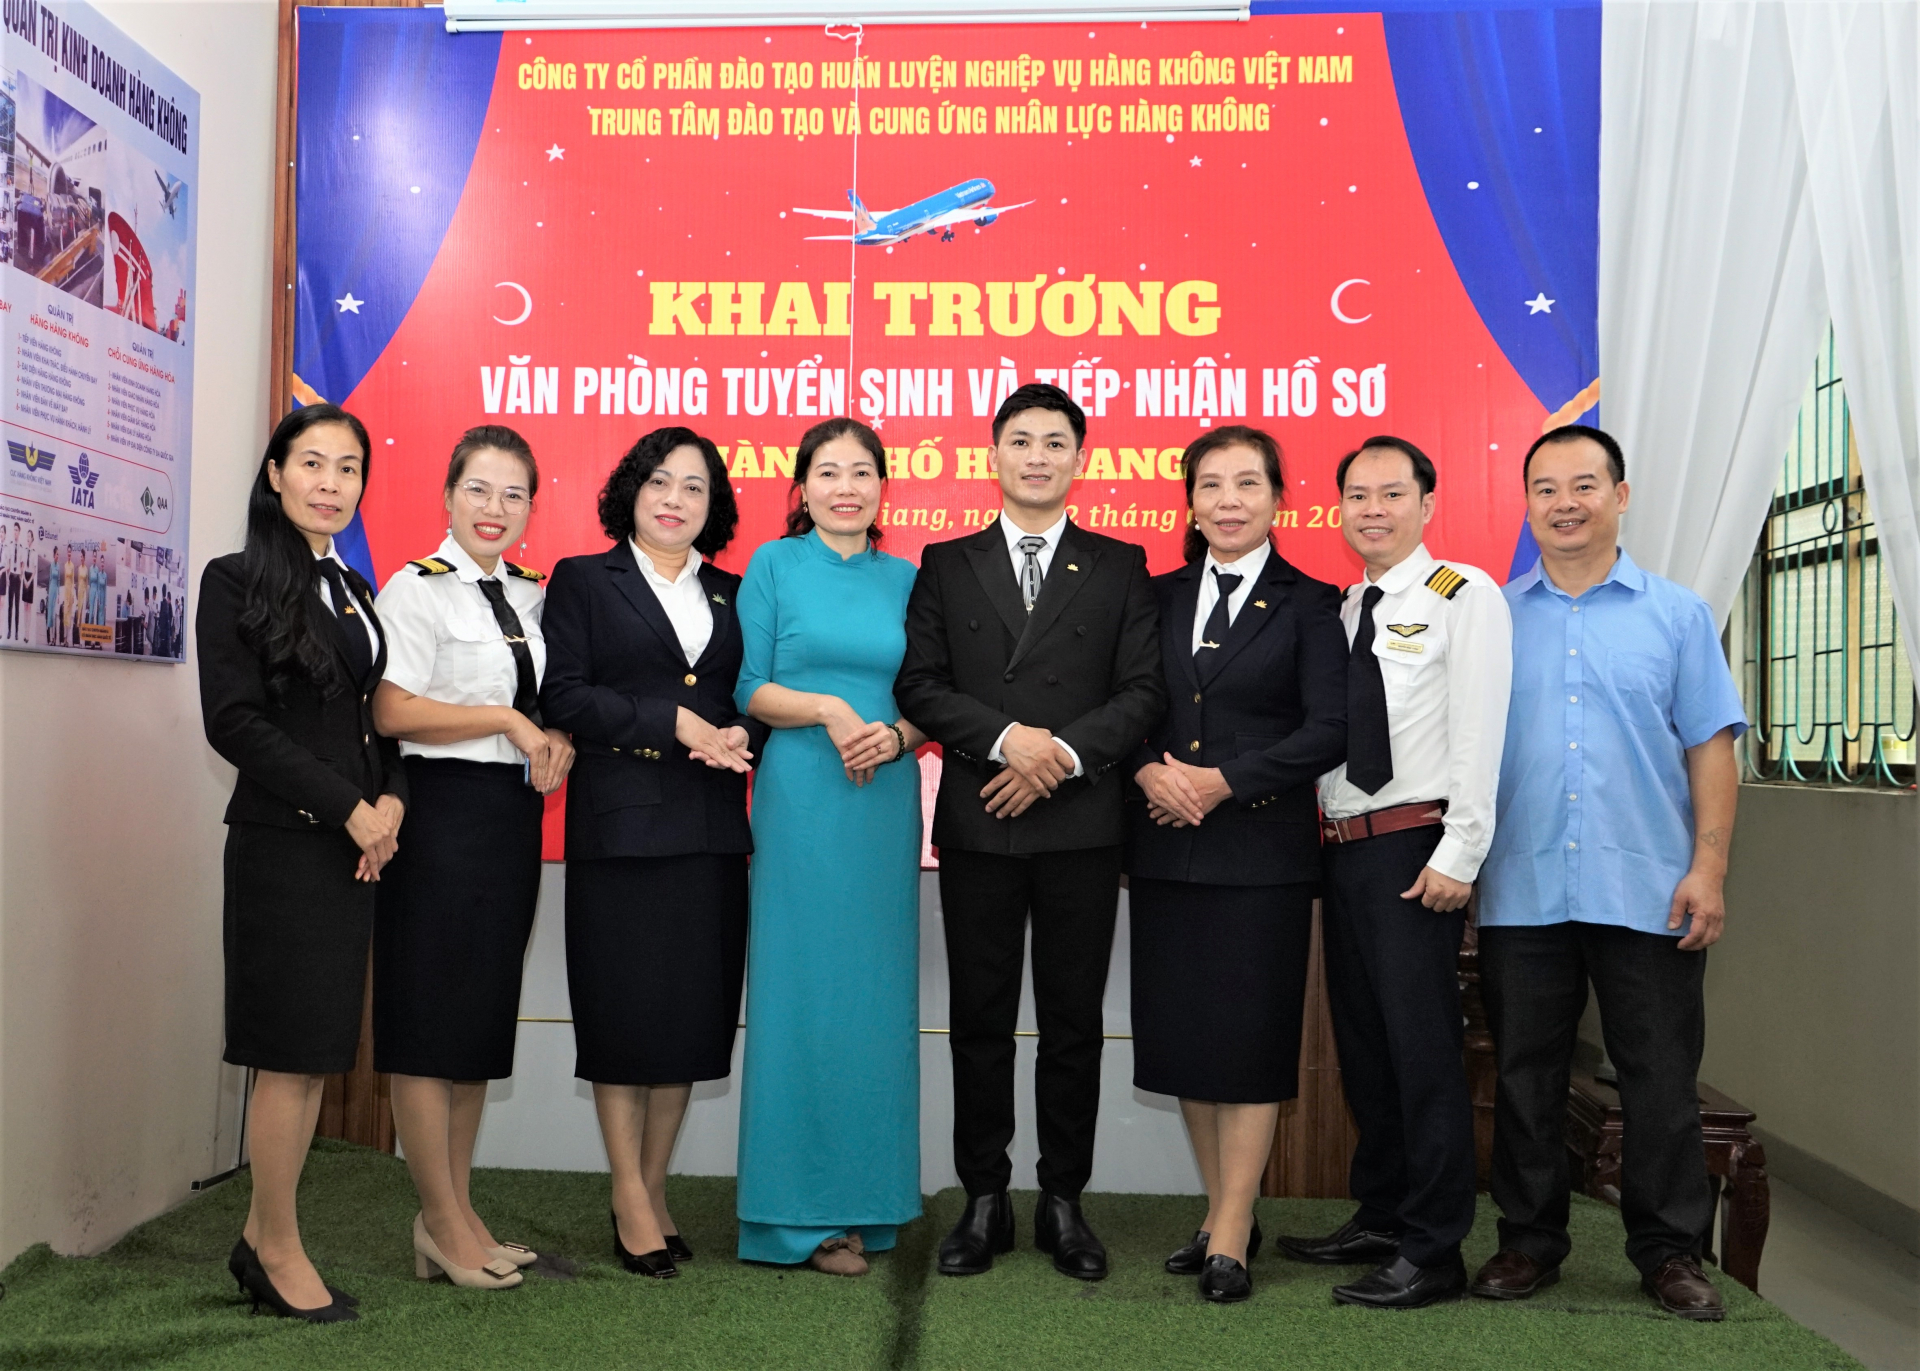 Lãnh đạo Công ty Cổ phần Đào tạo huấn luyện nghiệp vụ hàng không Việt Nam chụp hình lưu niệm tại buổi lễ khai trương